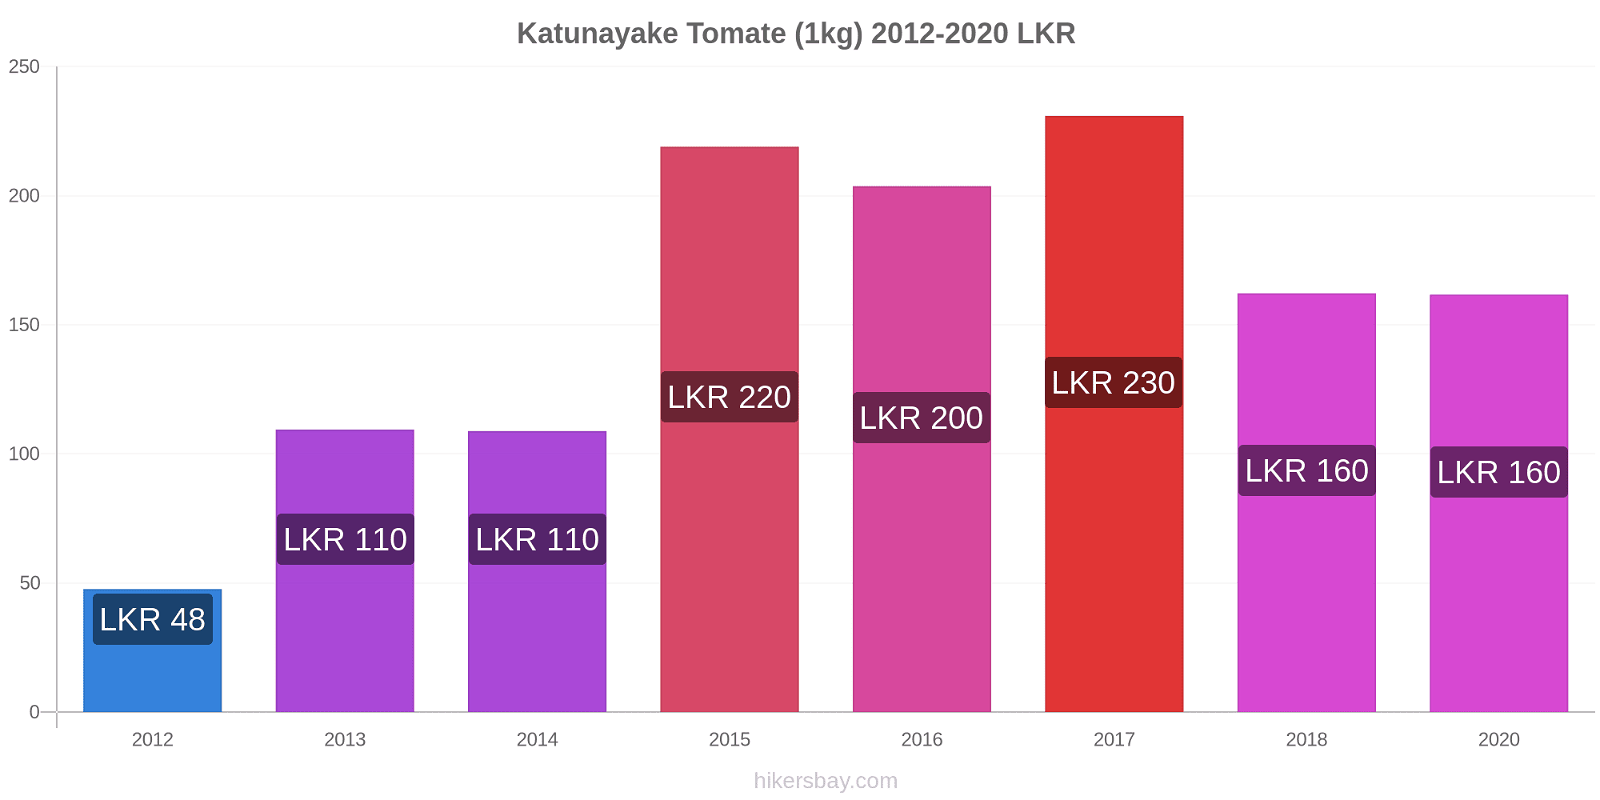 Katunayake cambios de precios Tomate (1kg) hikersbay.com